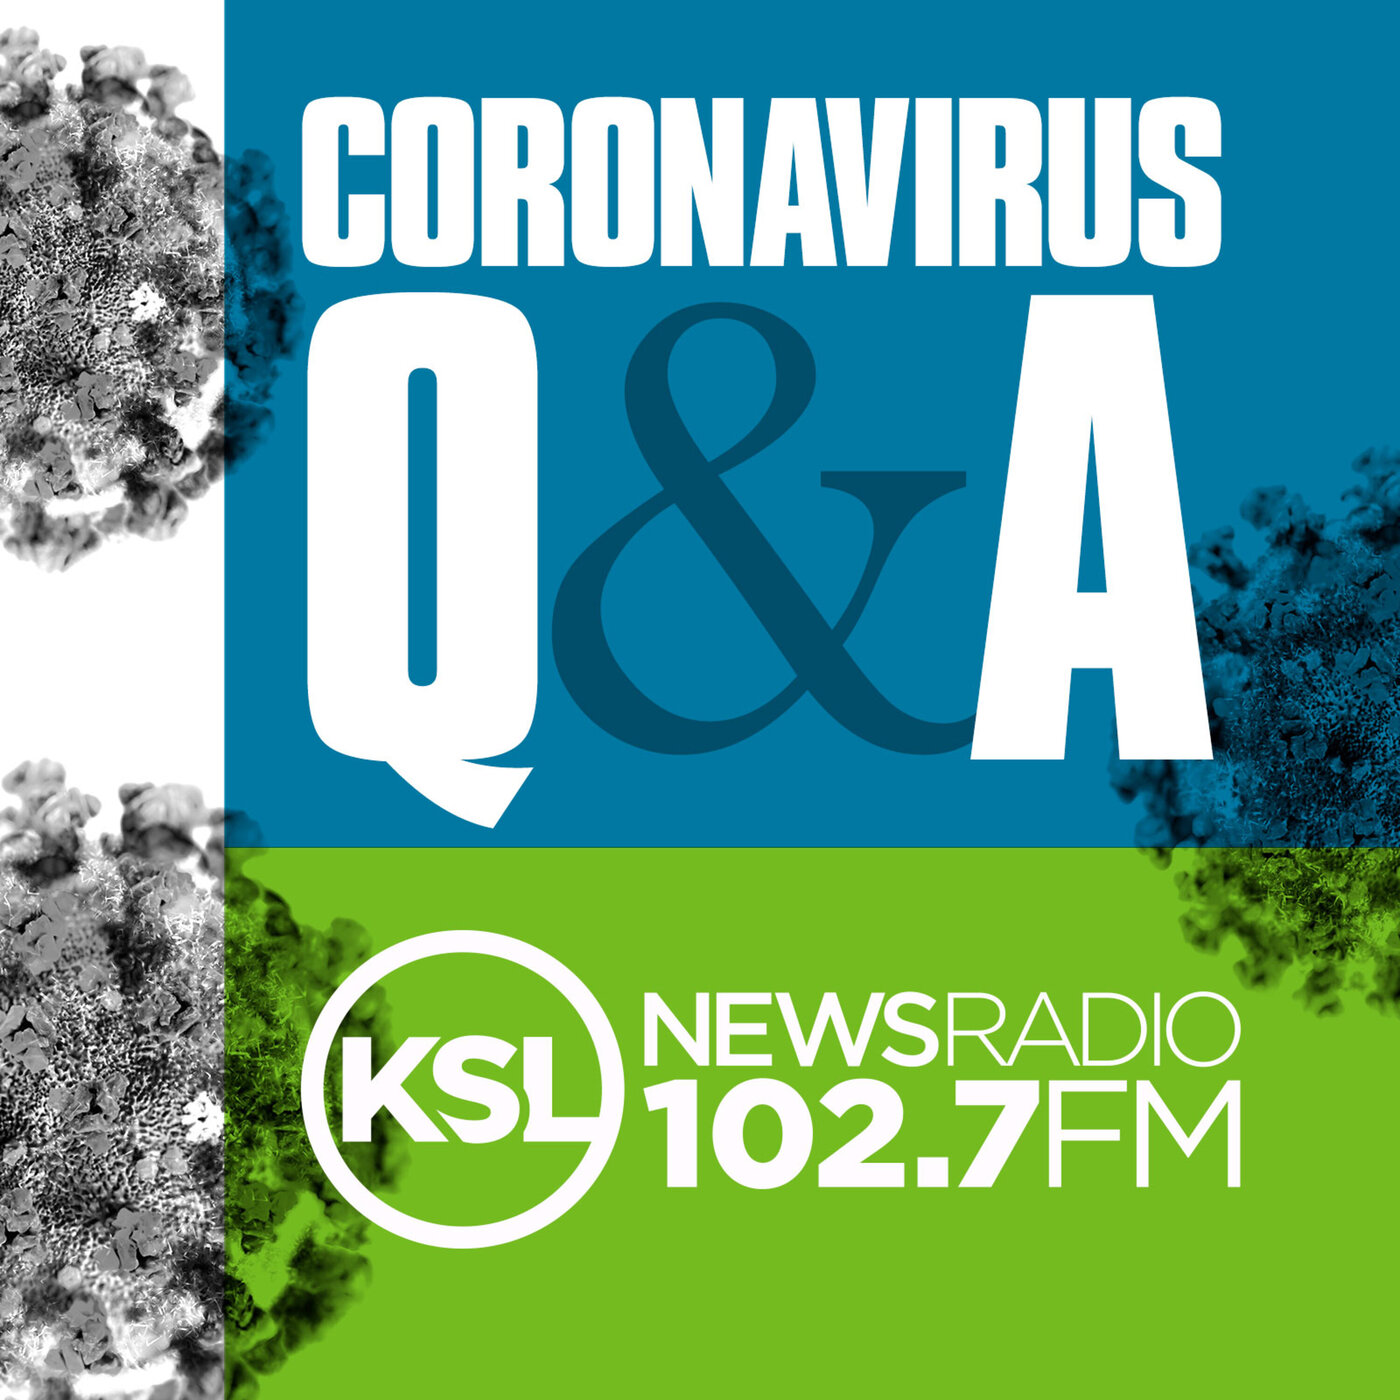 Coronavirus Update November 3rd